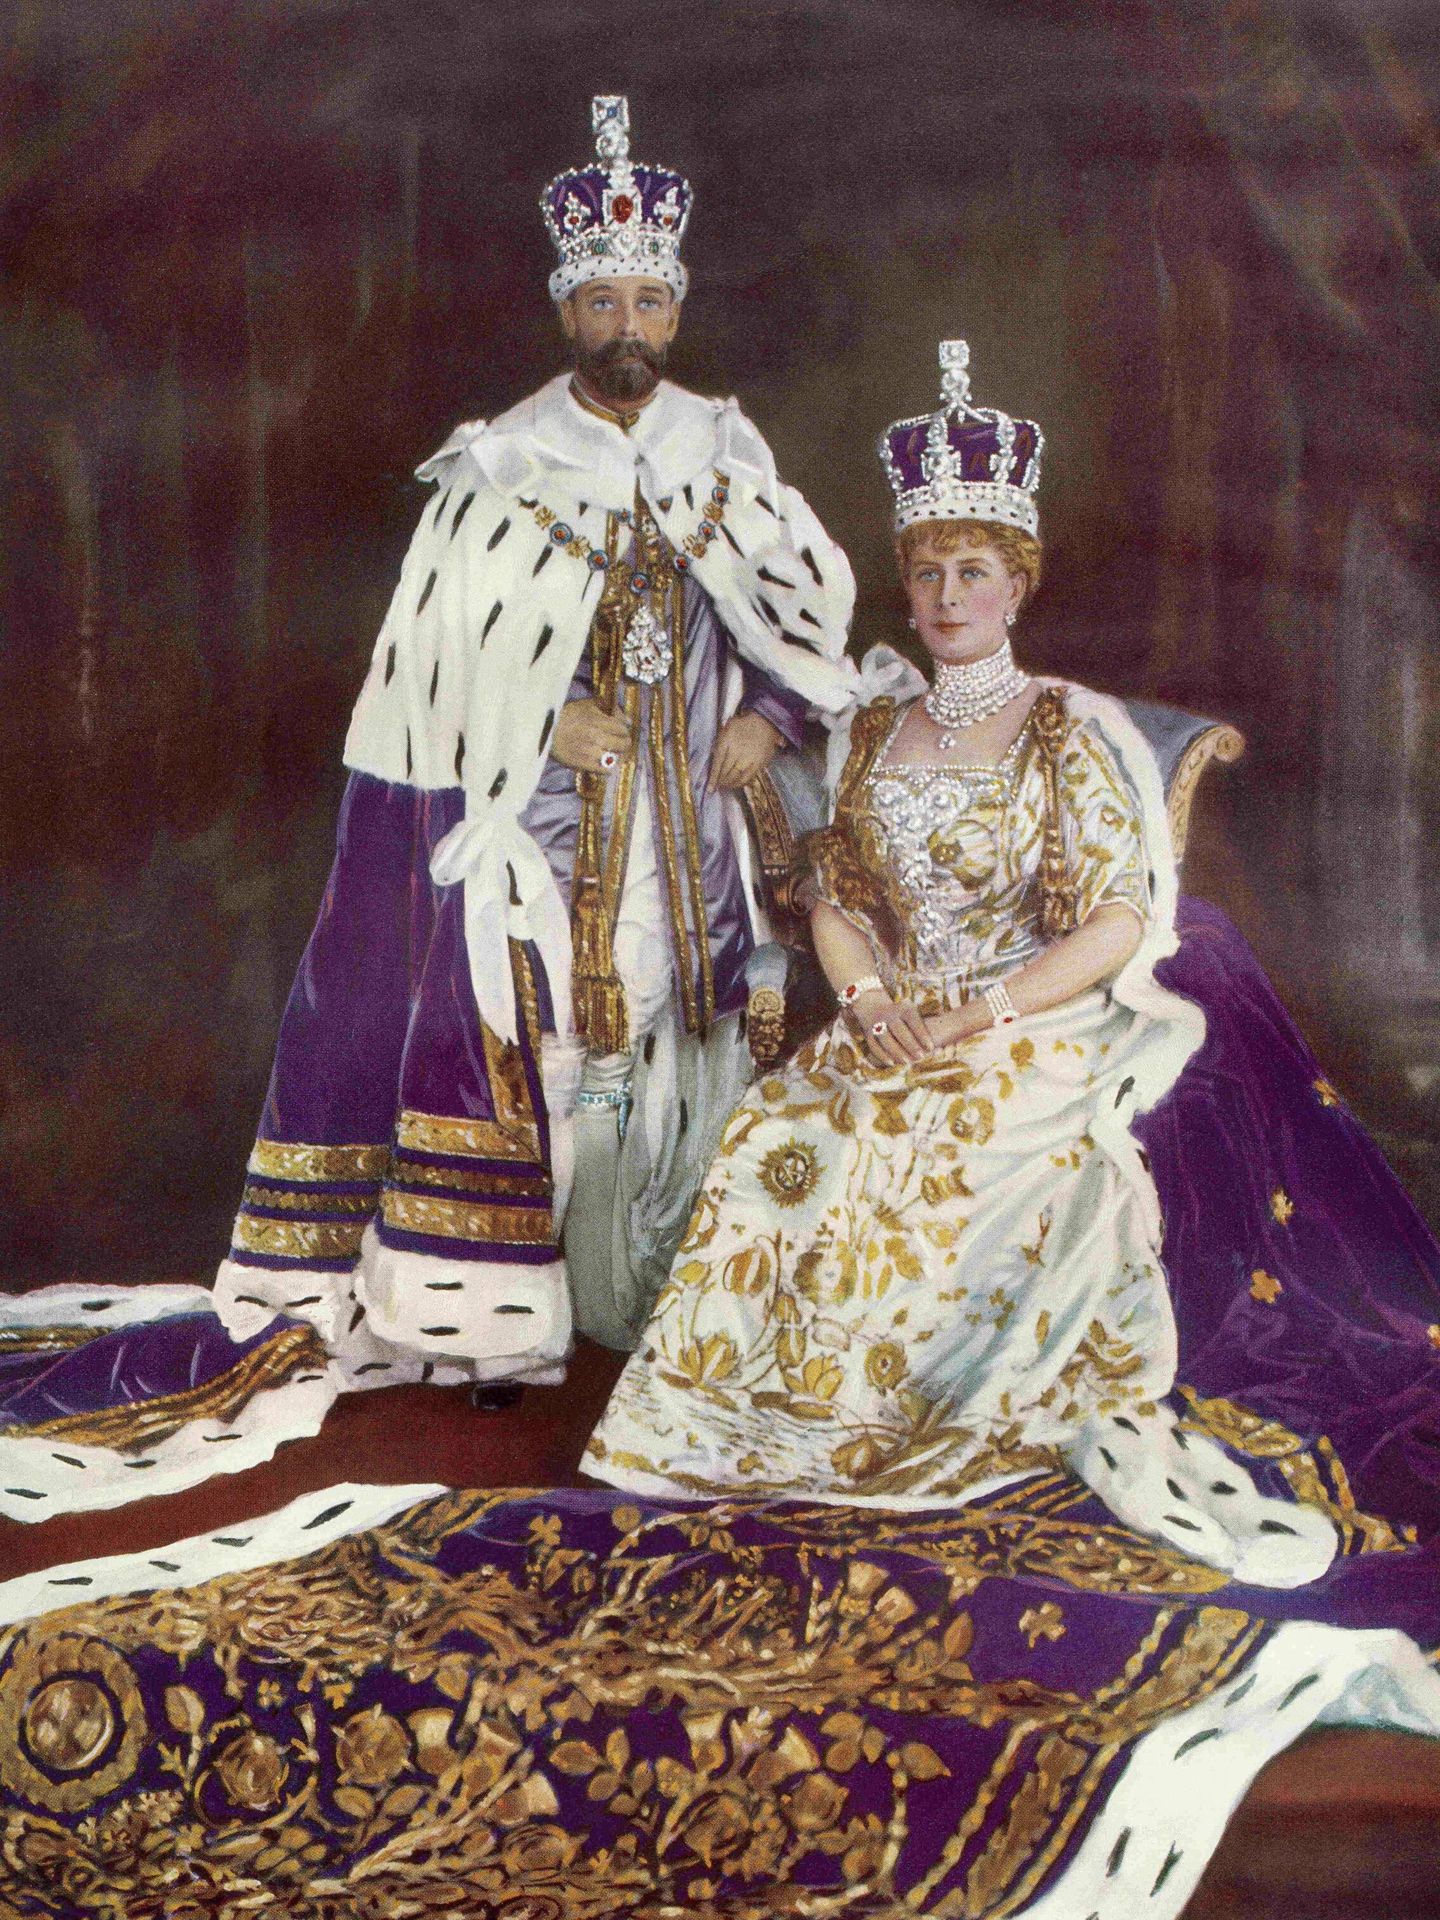 Retrato del rey Jorge V y de la reina María de Teck, el día de su coronación. (Cordon Press)